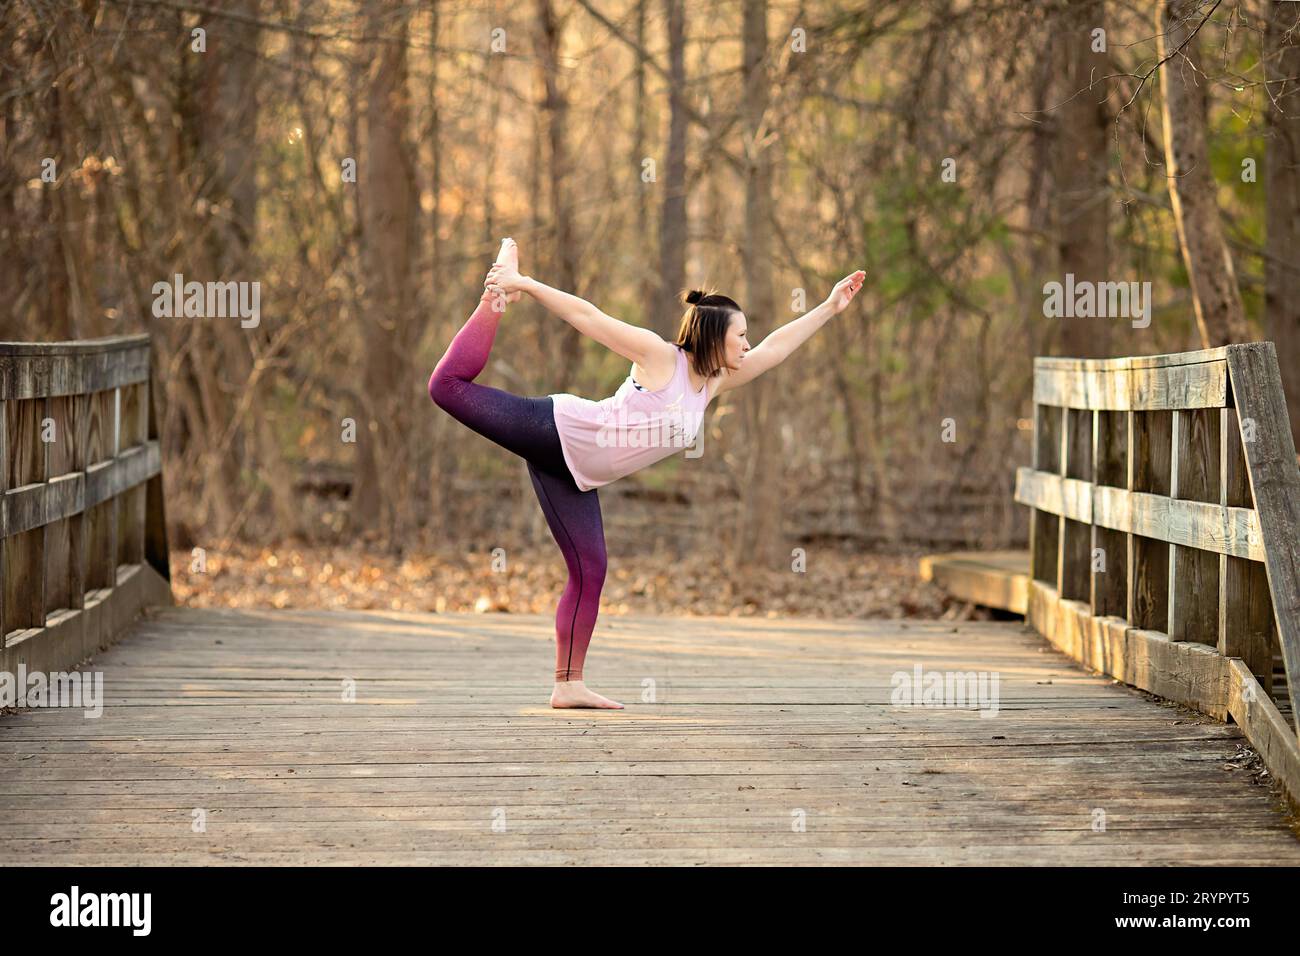 Femme pratiquant le yoga sur un pont pieds nus Banque D'Images